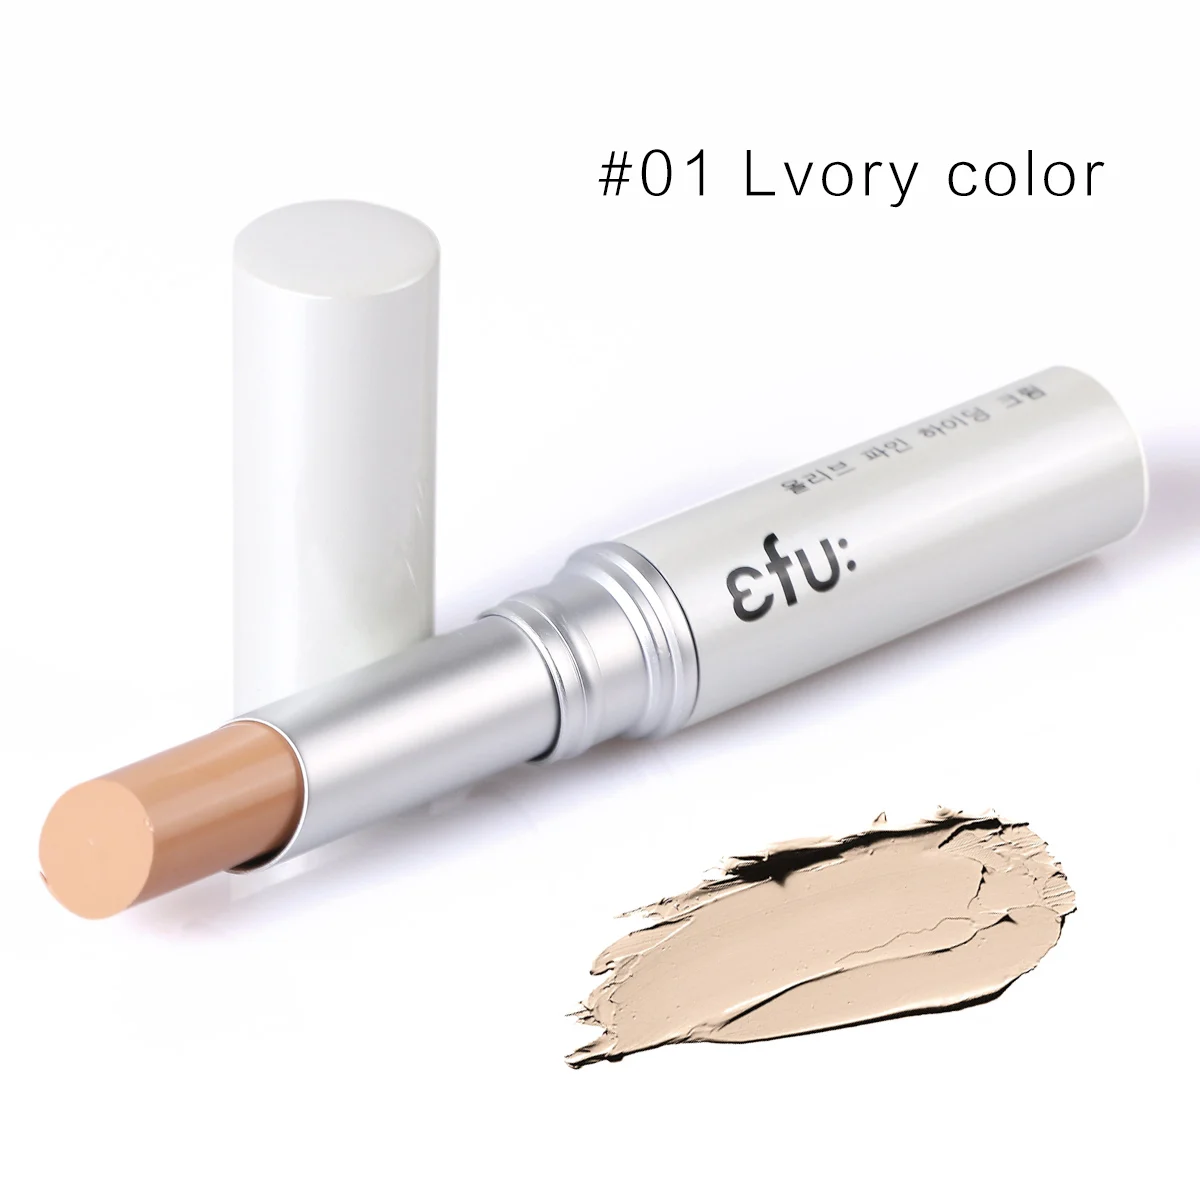 Спрятать Пятнистое оливковое Корректирующее средство 3 цвета карандаш-консилер для лица кремовый здоровый база 2,6 г макияж бренд EFU#8063 - Цвет: 01